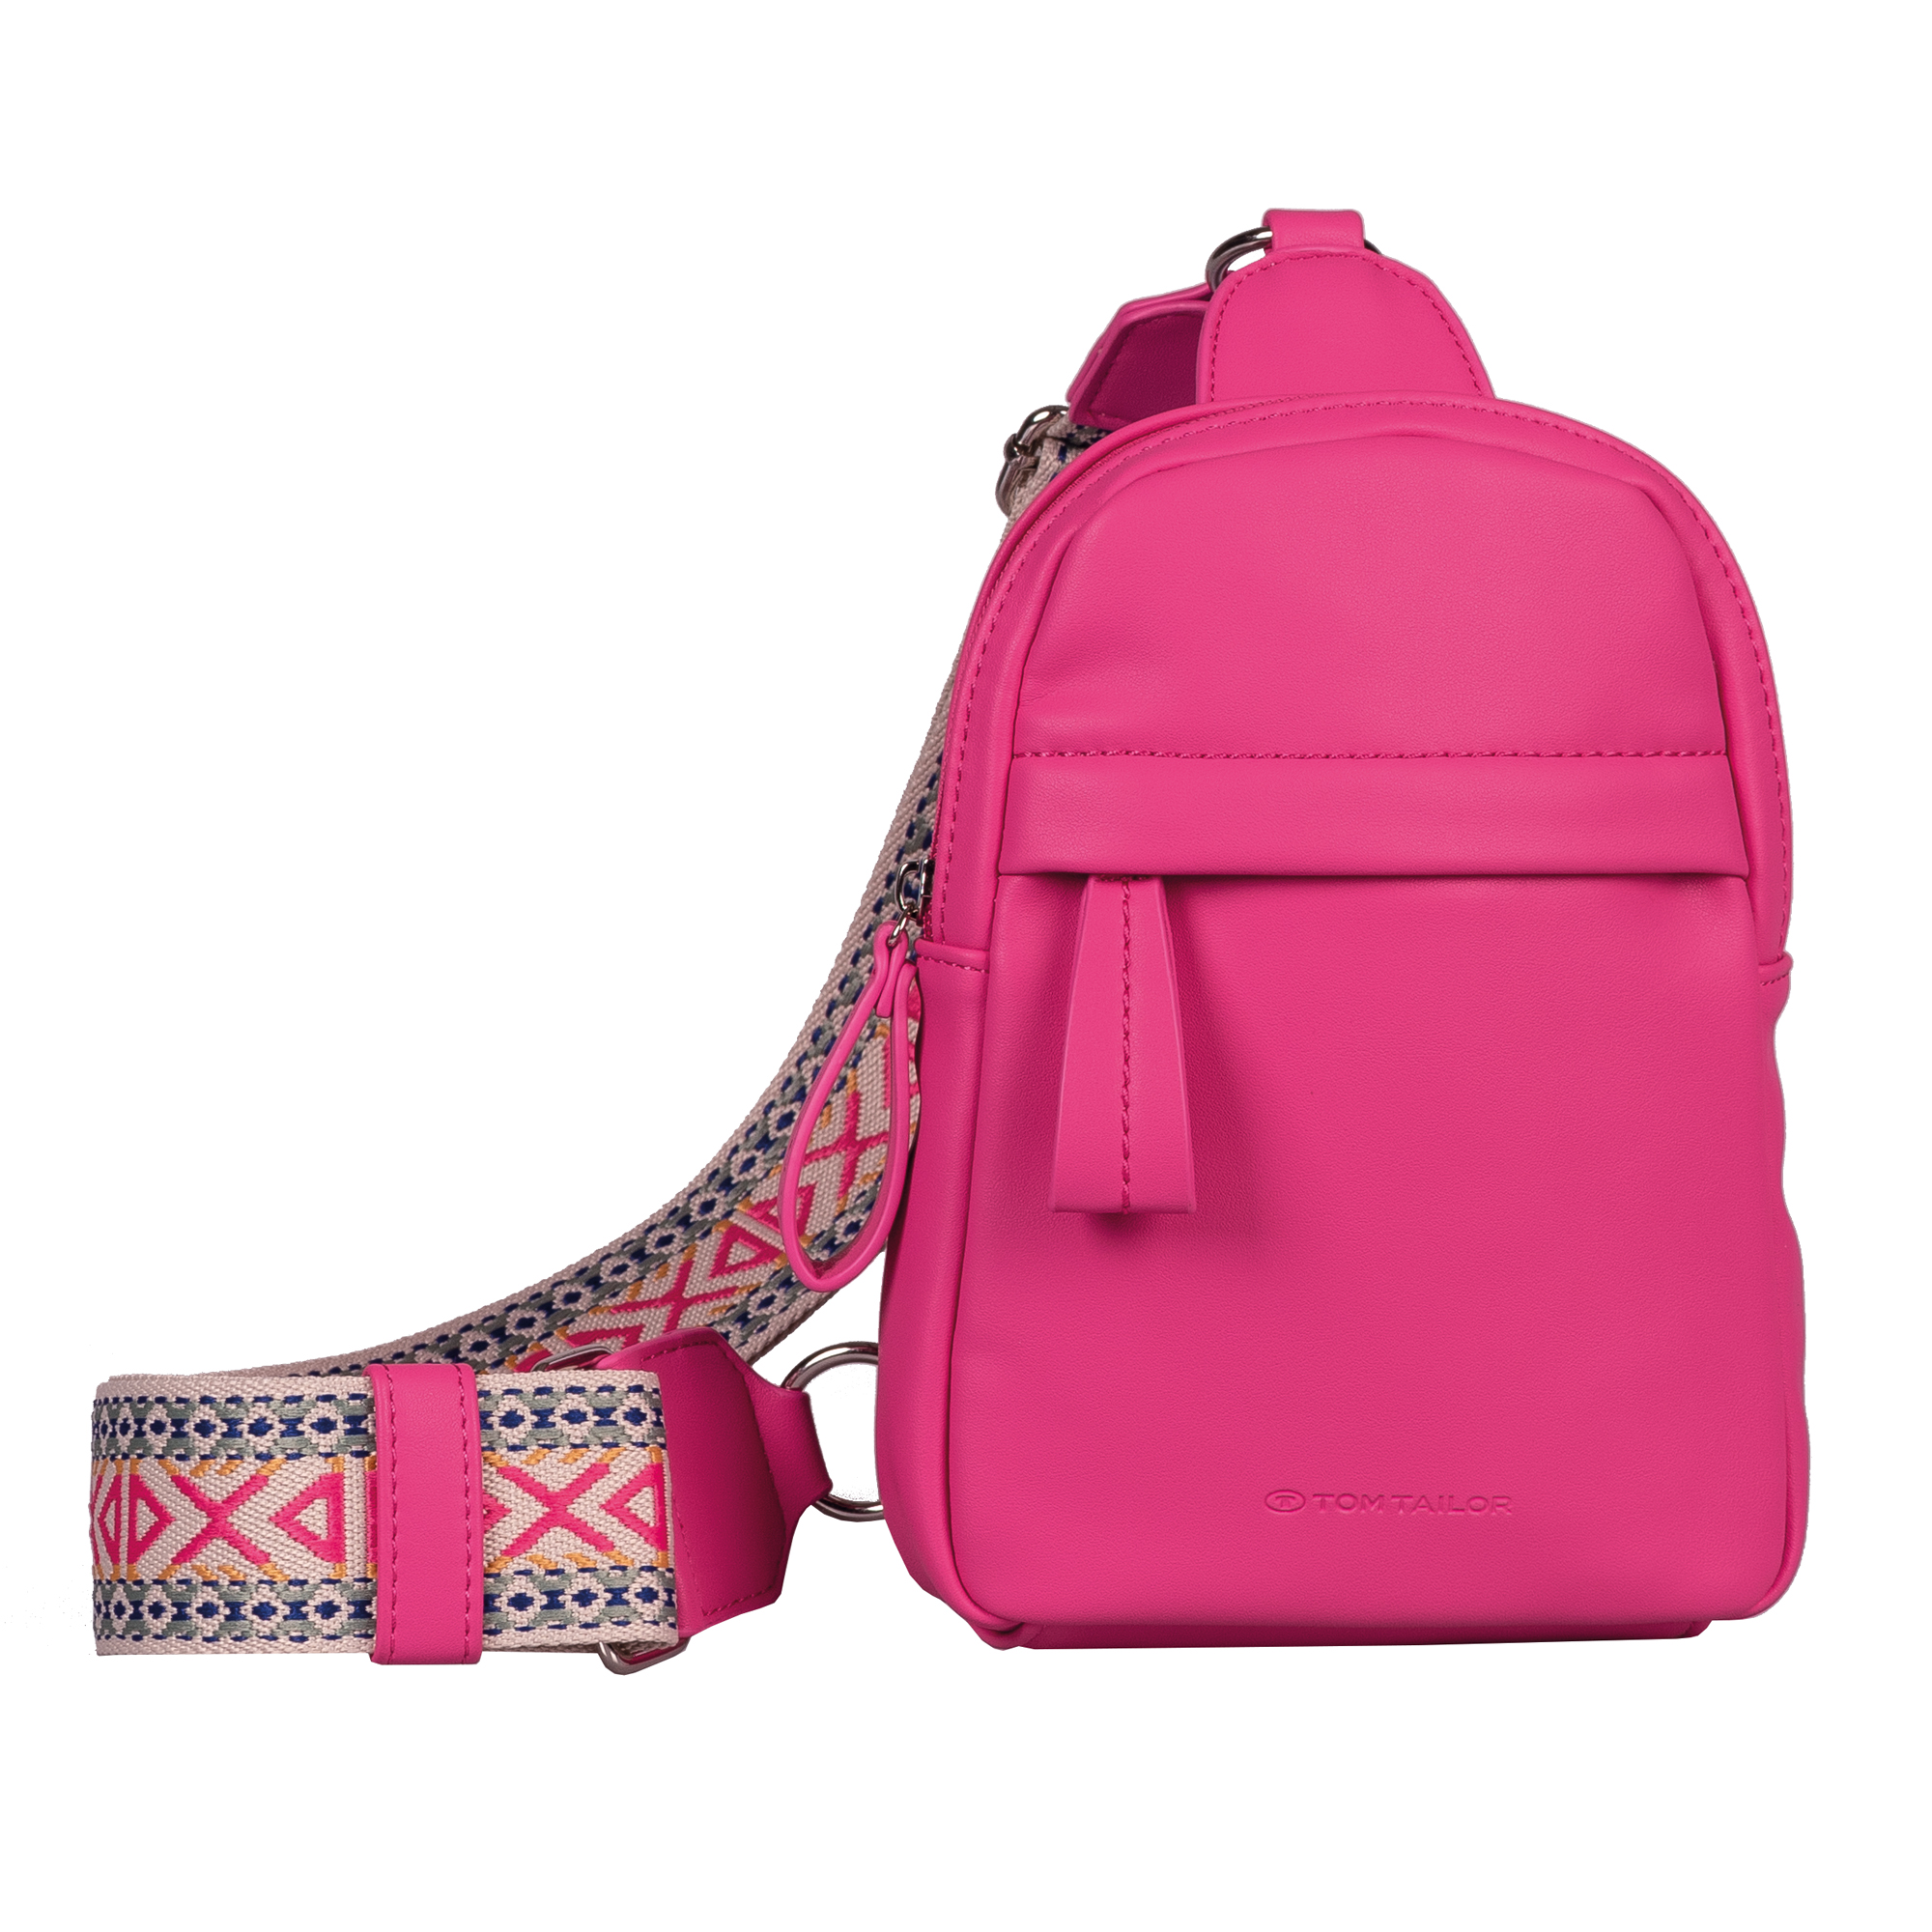 Рюкзак женский Tom Tailor Bags 10756 розовый, 16,5x5,5x22 см